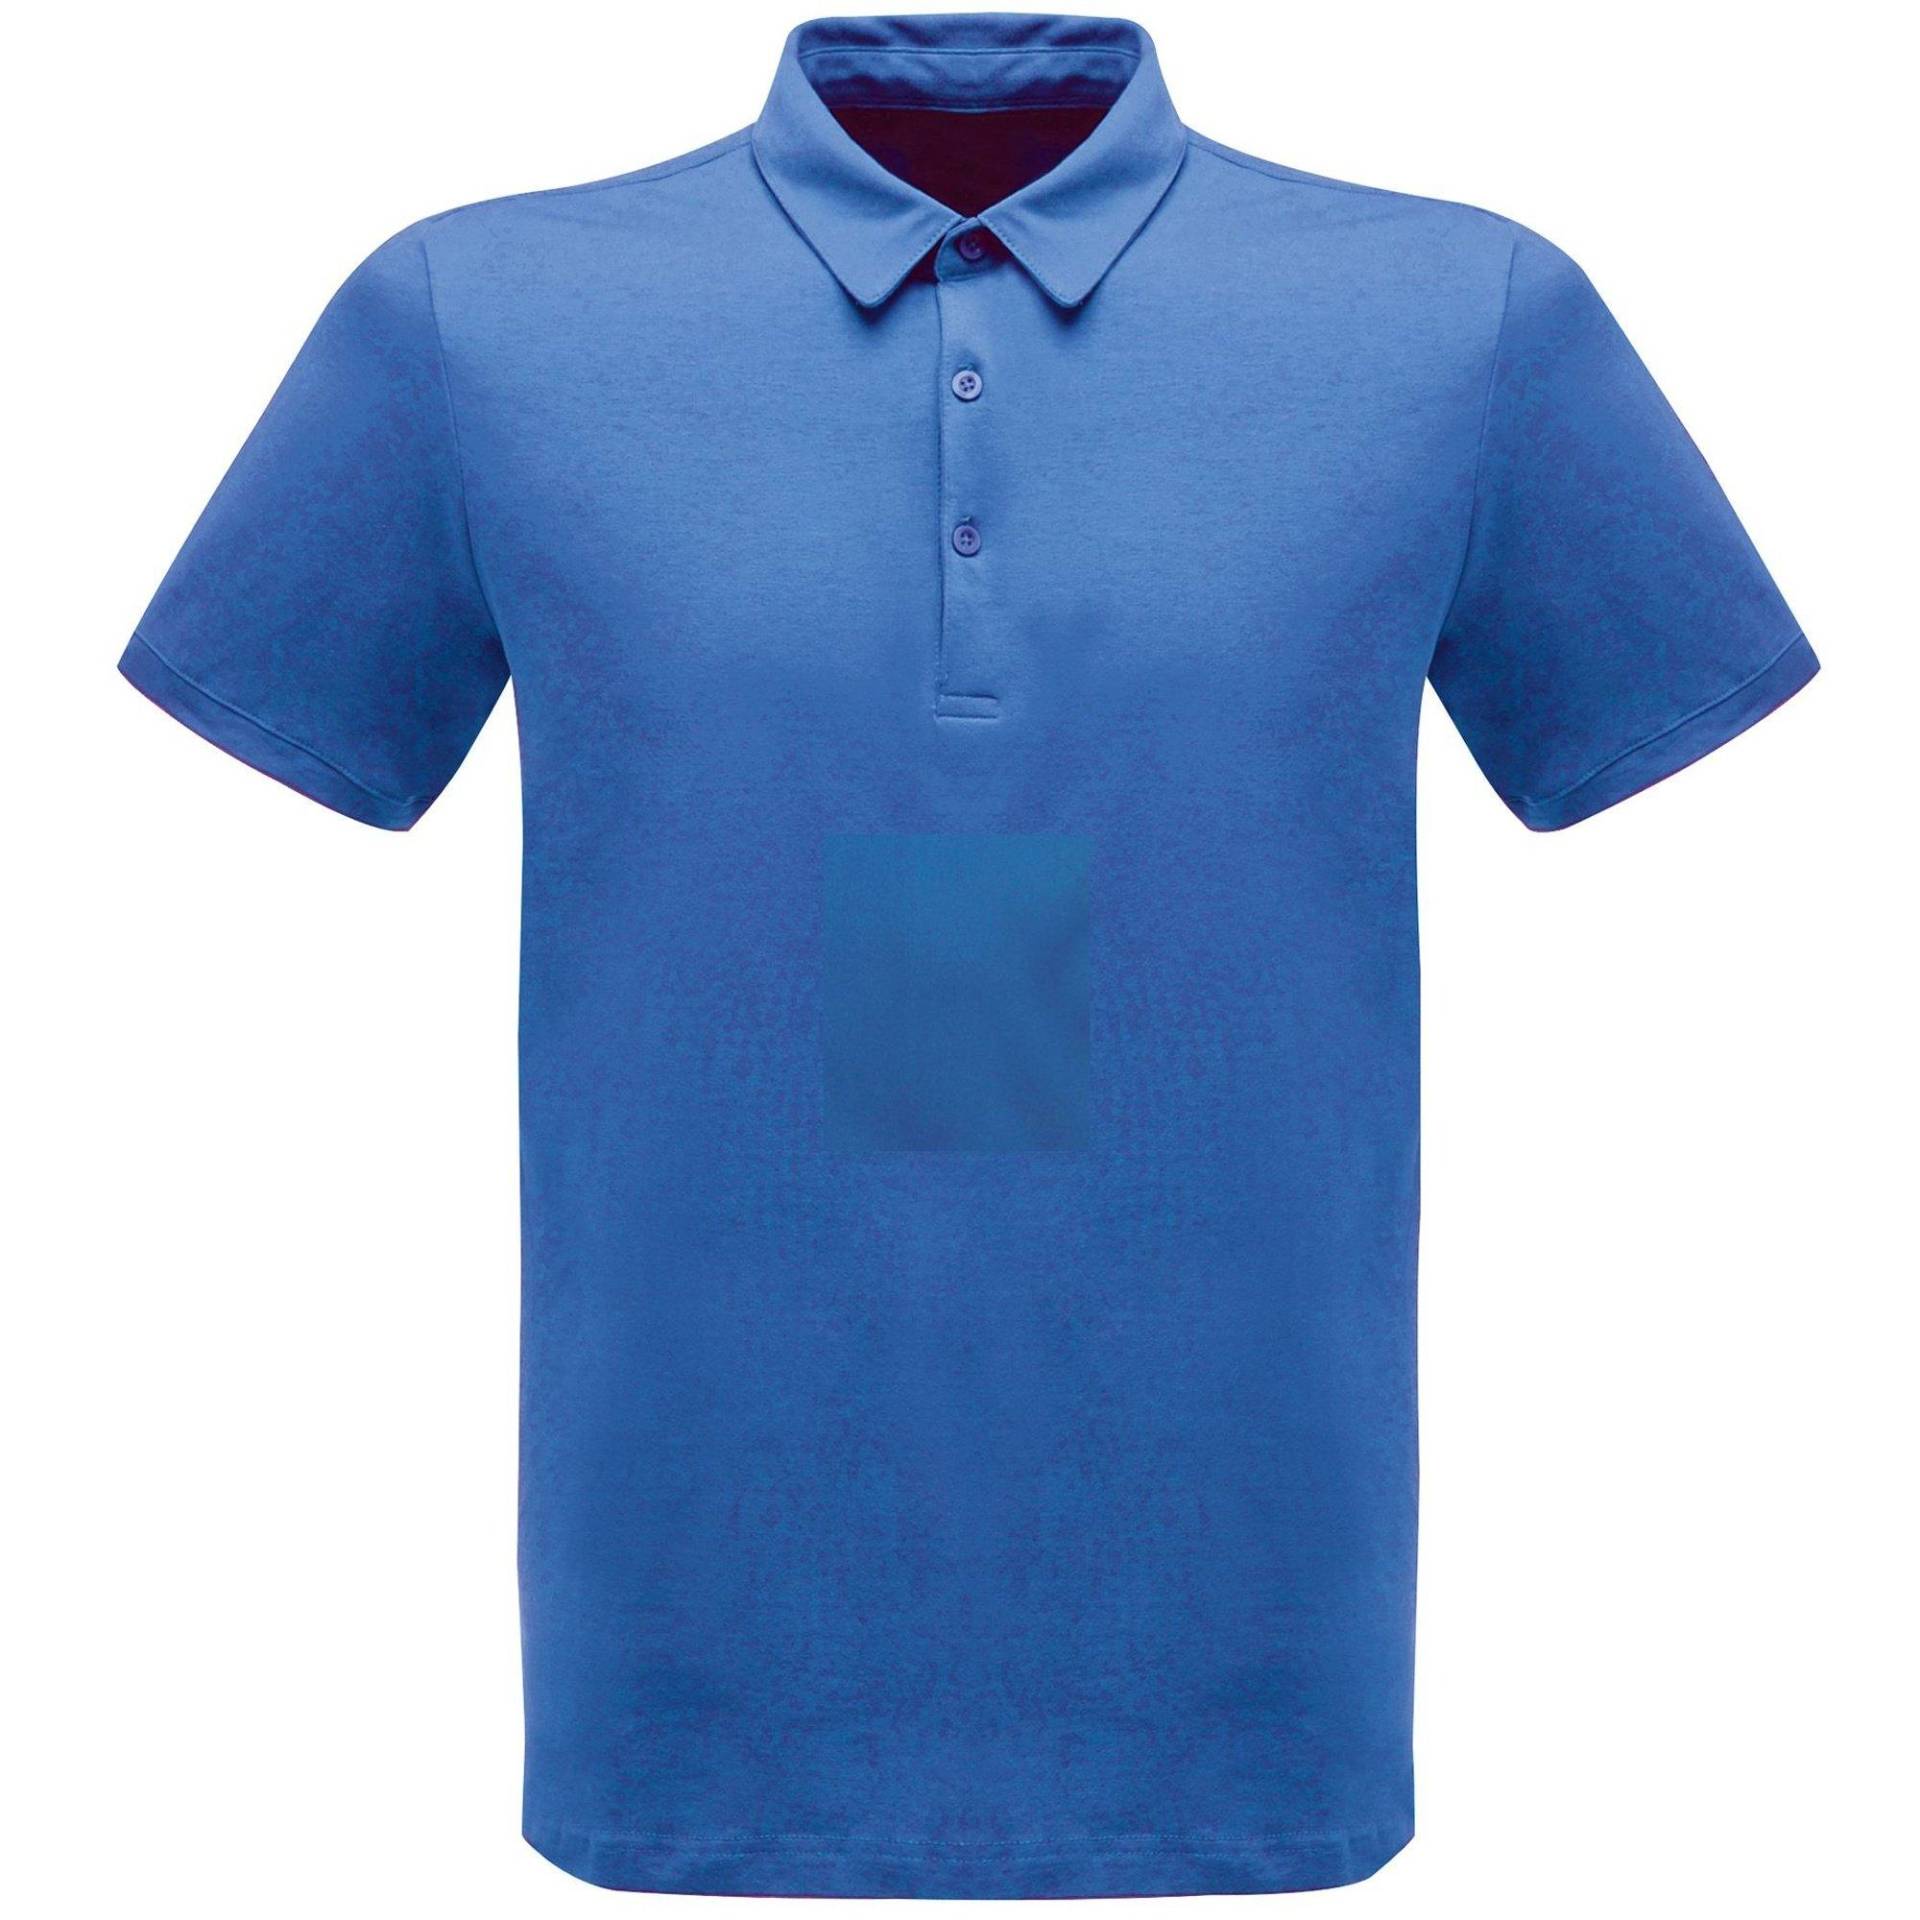 Professionell 6535 Klassik Poloshirt Herren Blau S von Regatta